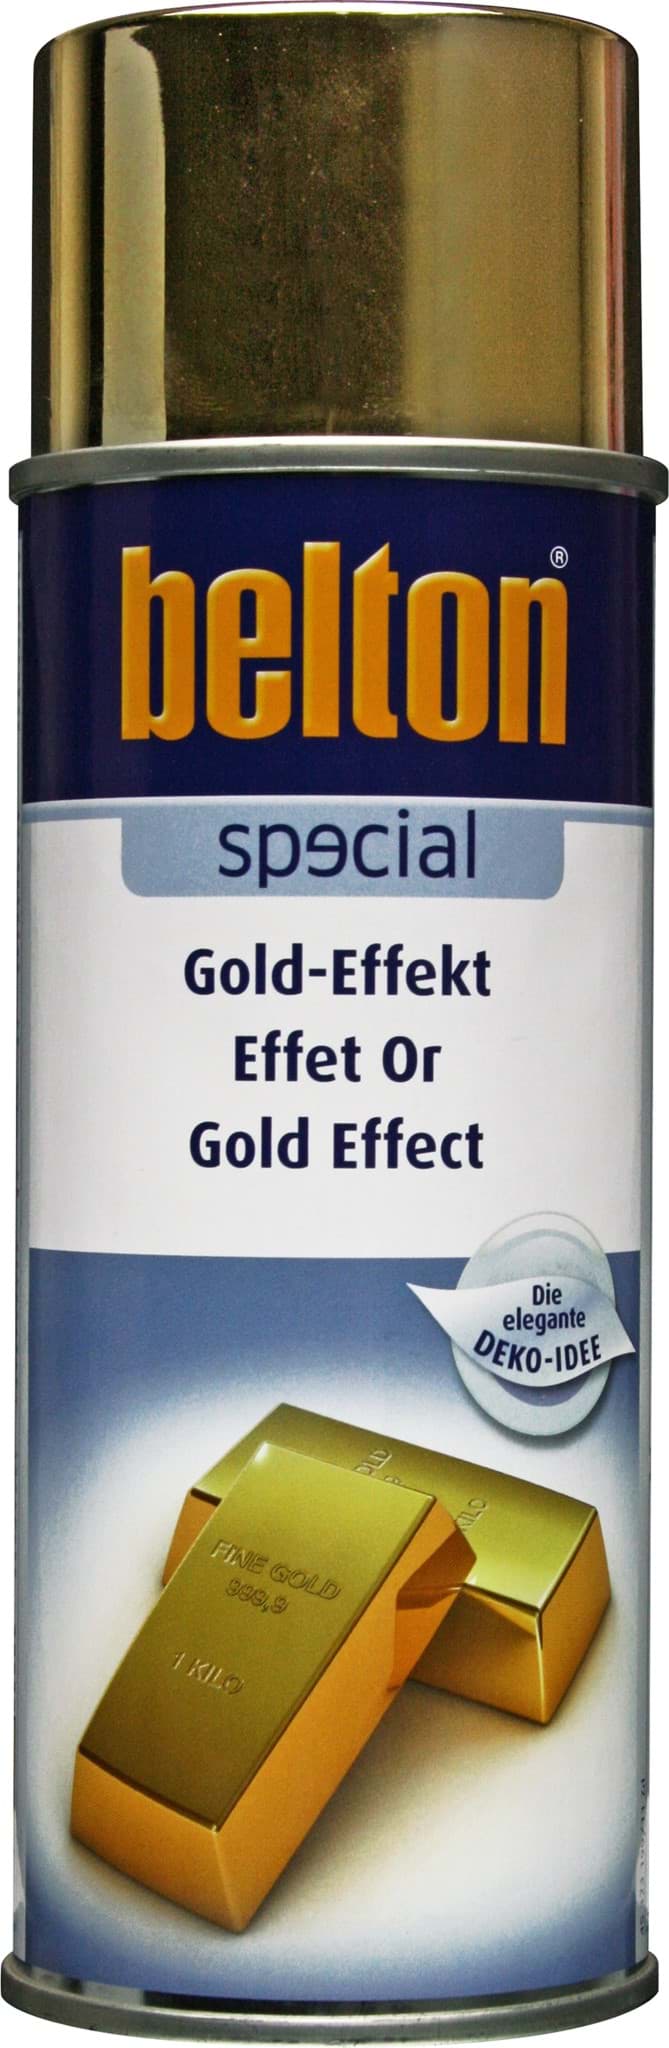 Afbeelding van Belton special Gold Effekt Spray